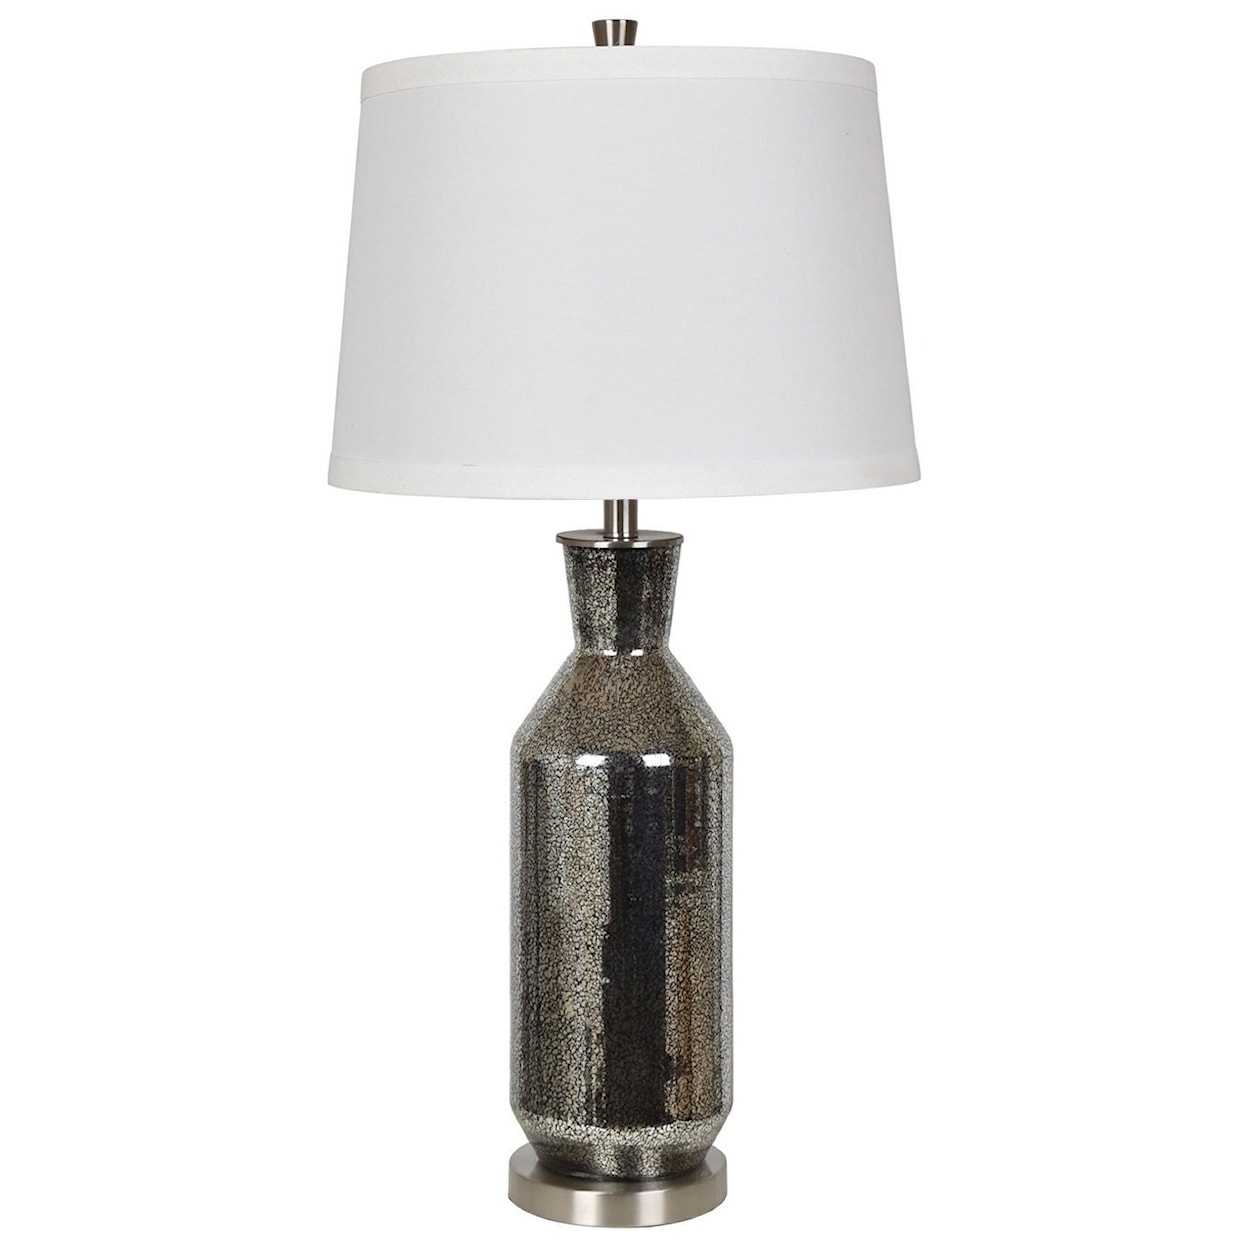 Crestview Collection Lighting Jaden Table Lamp II